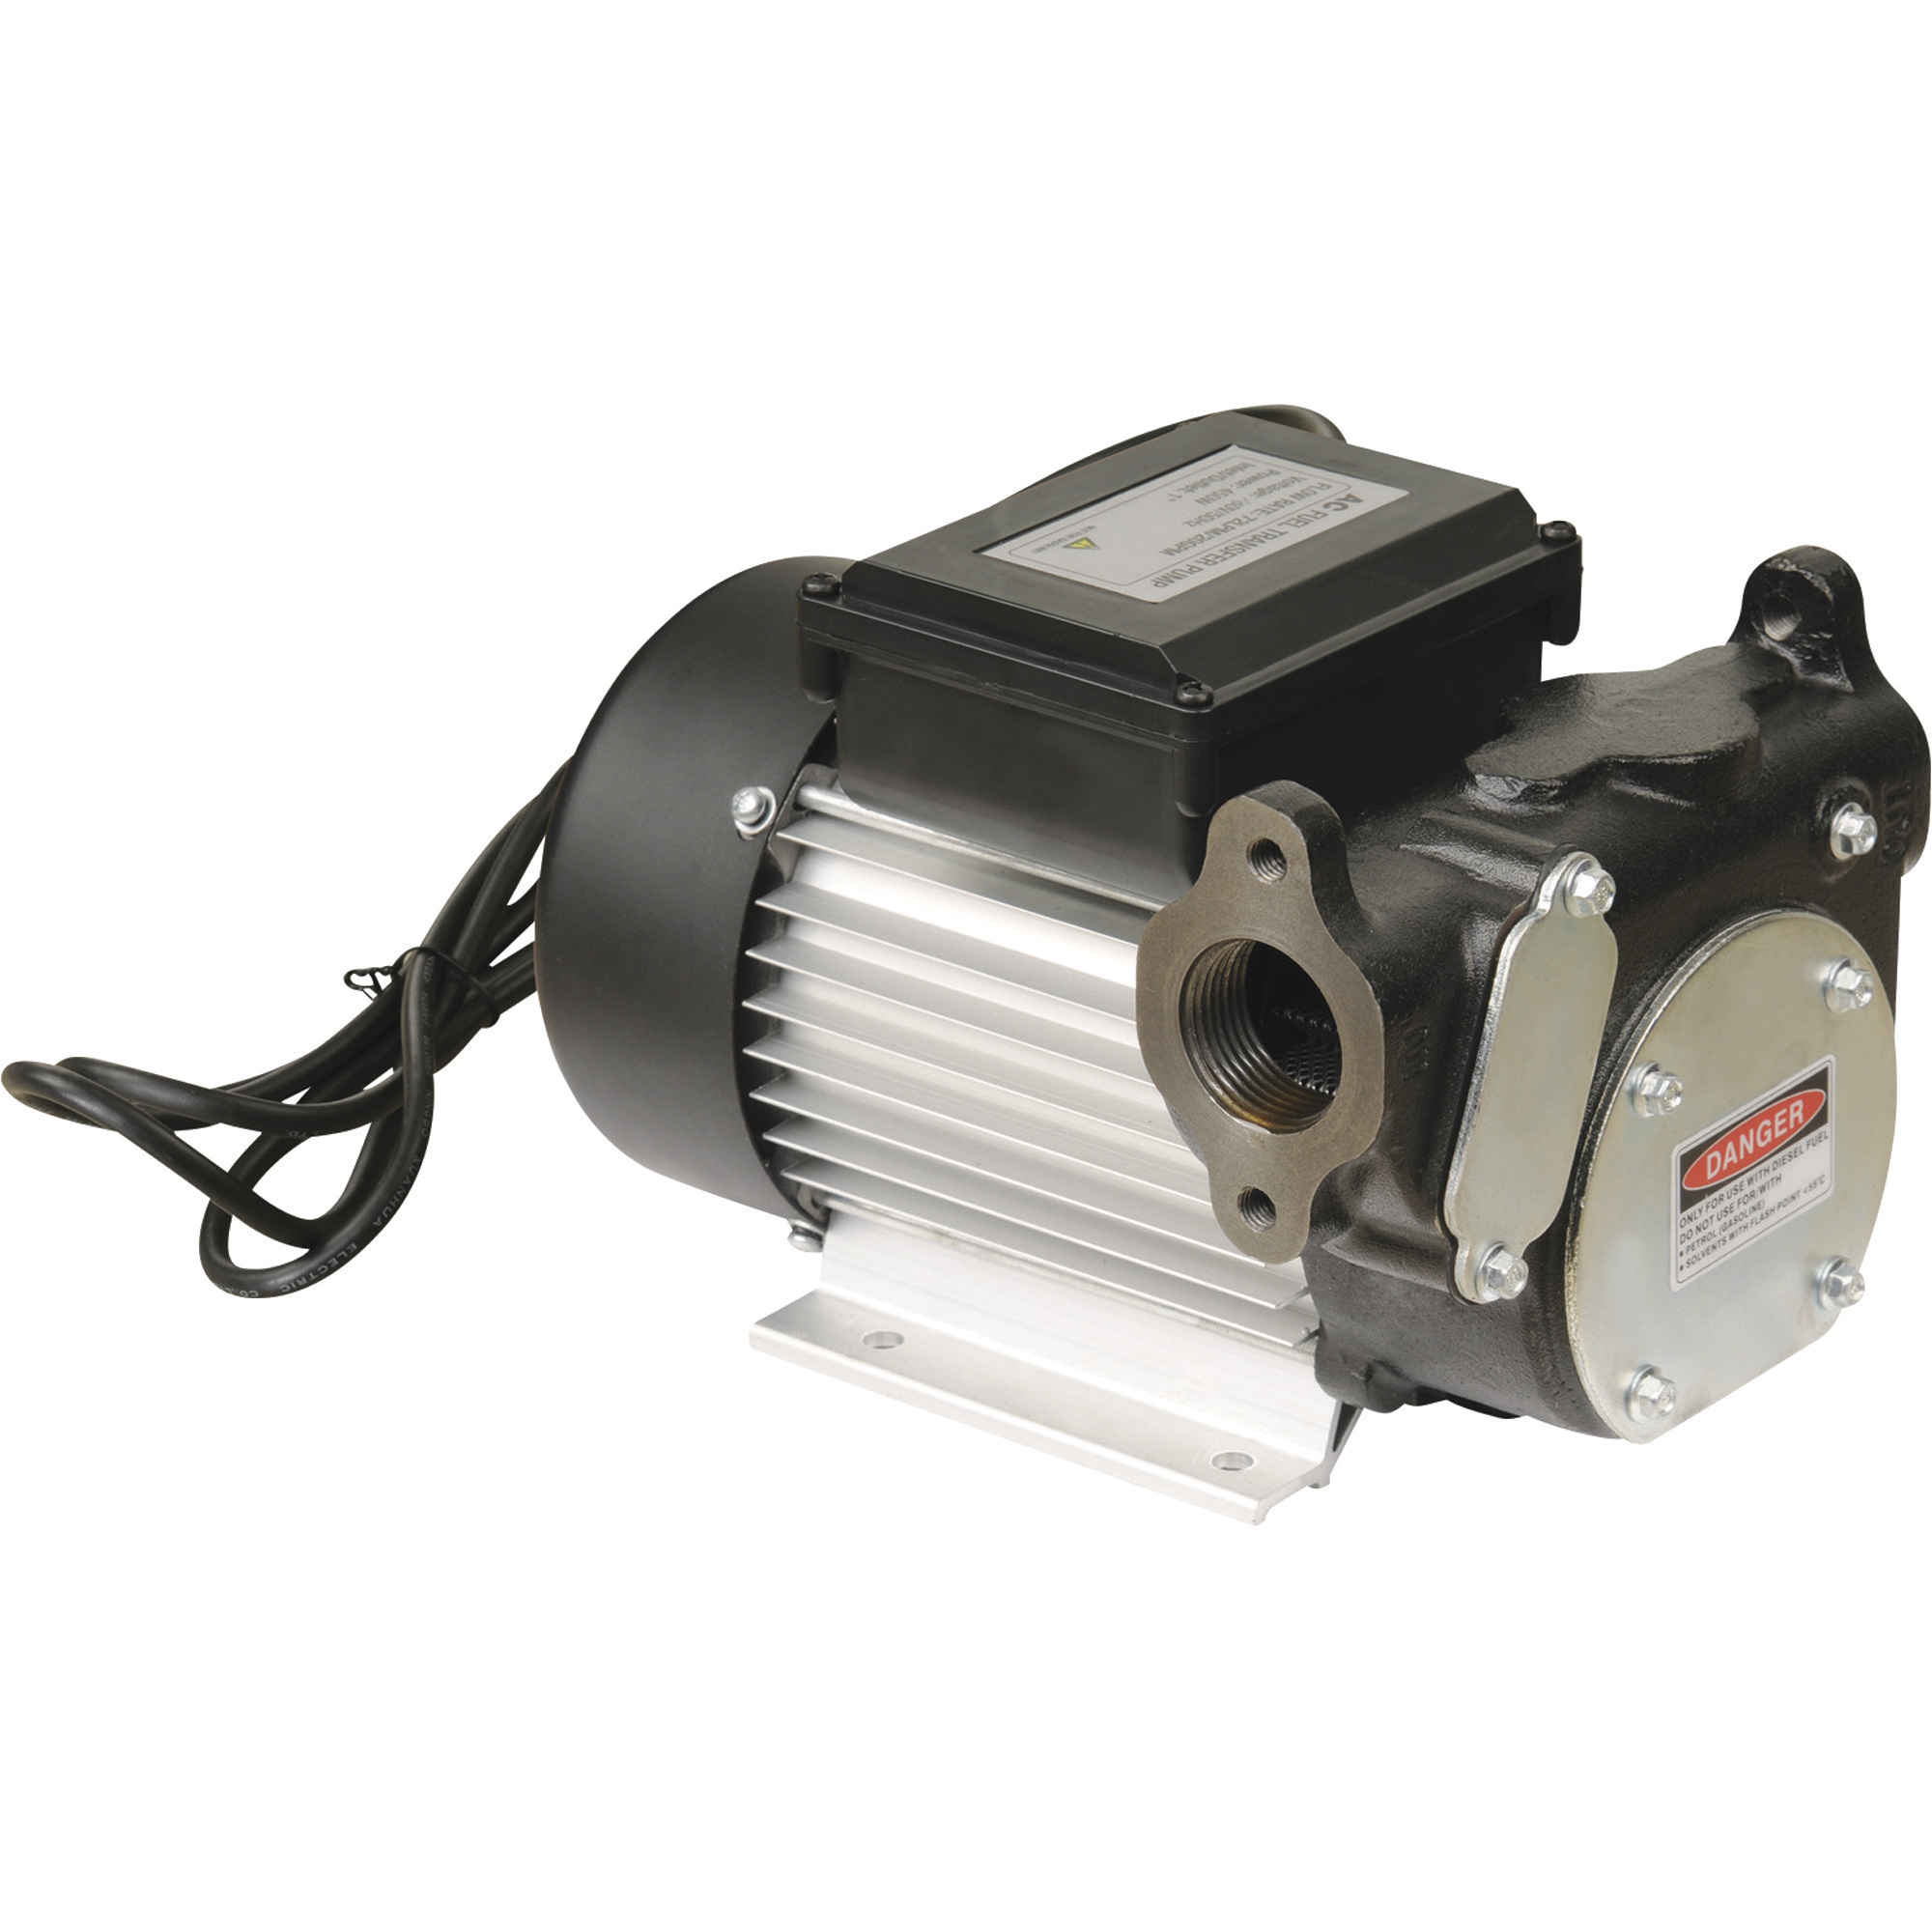 Roughneck 120V Fuel Transfer Pump — 22 GPM